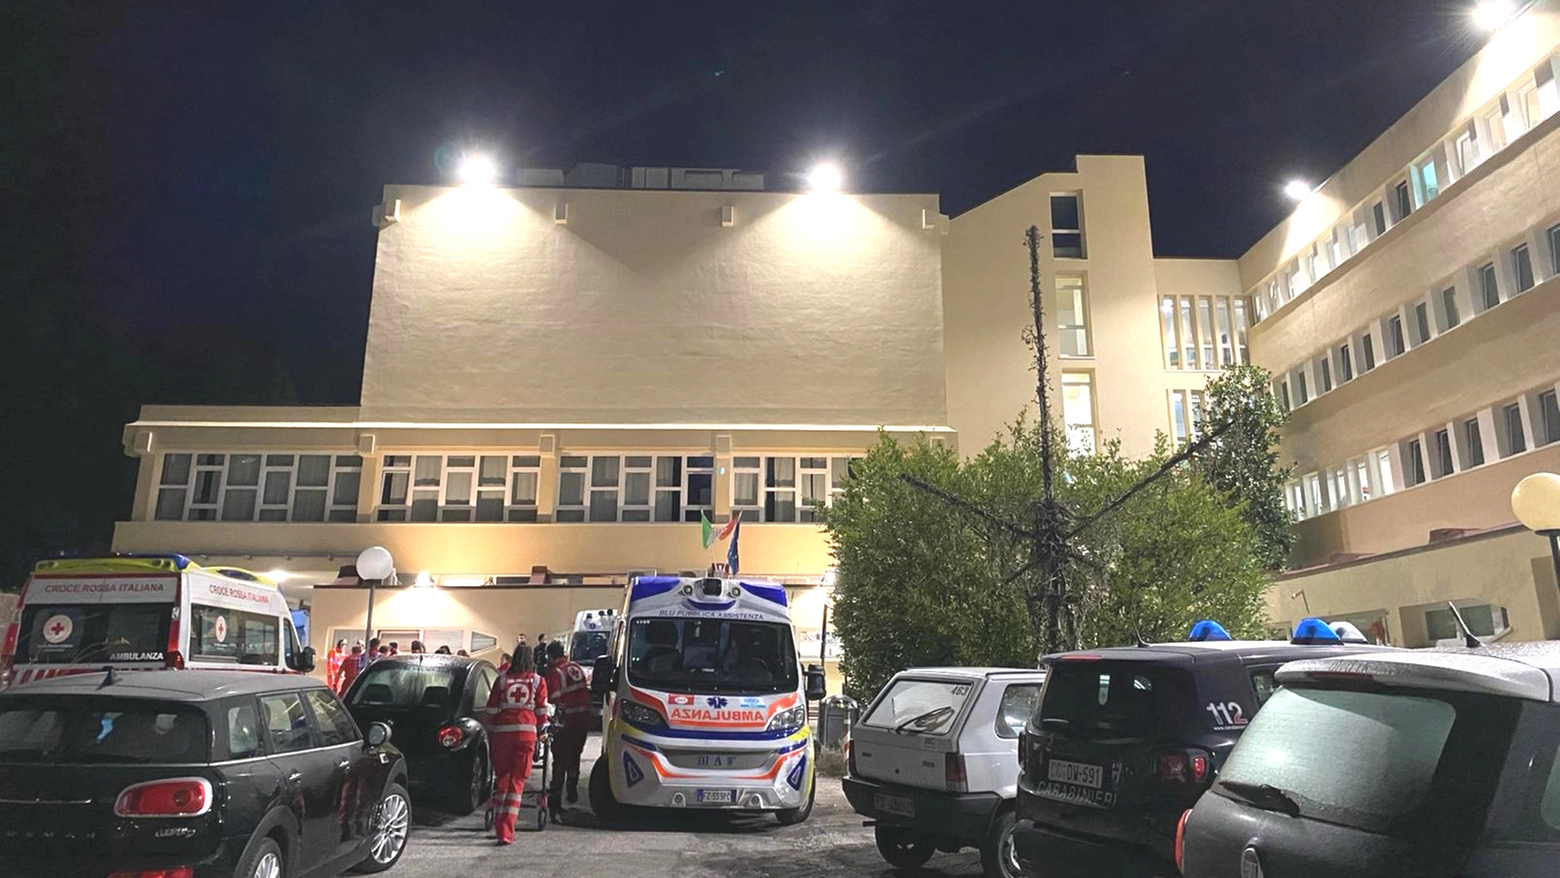 Tutti e 27 i pazienti ricoverati nella struttura sono stati trasferiti al nosocomio di Urbino